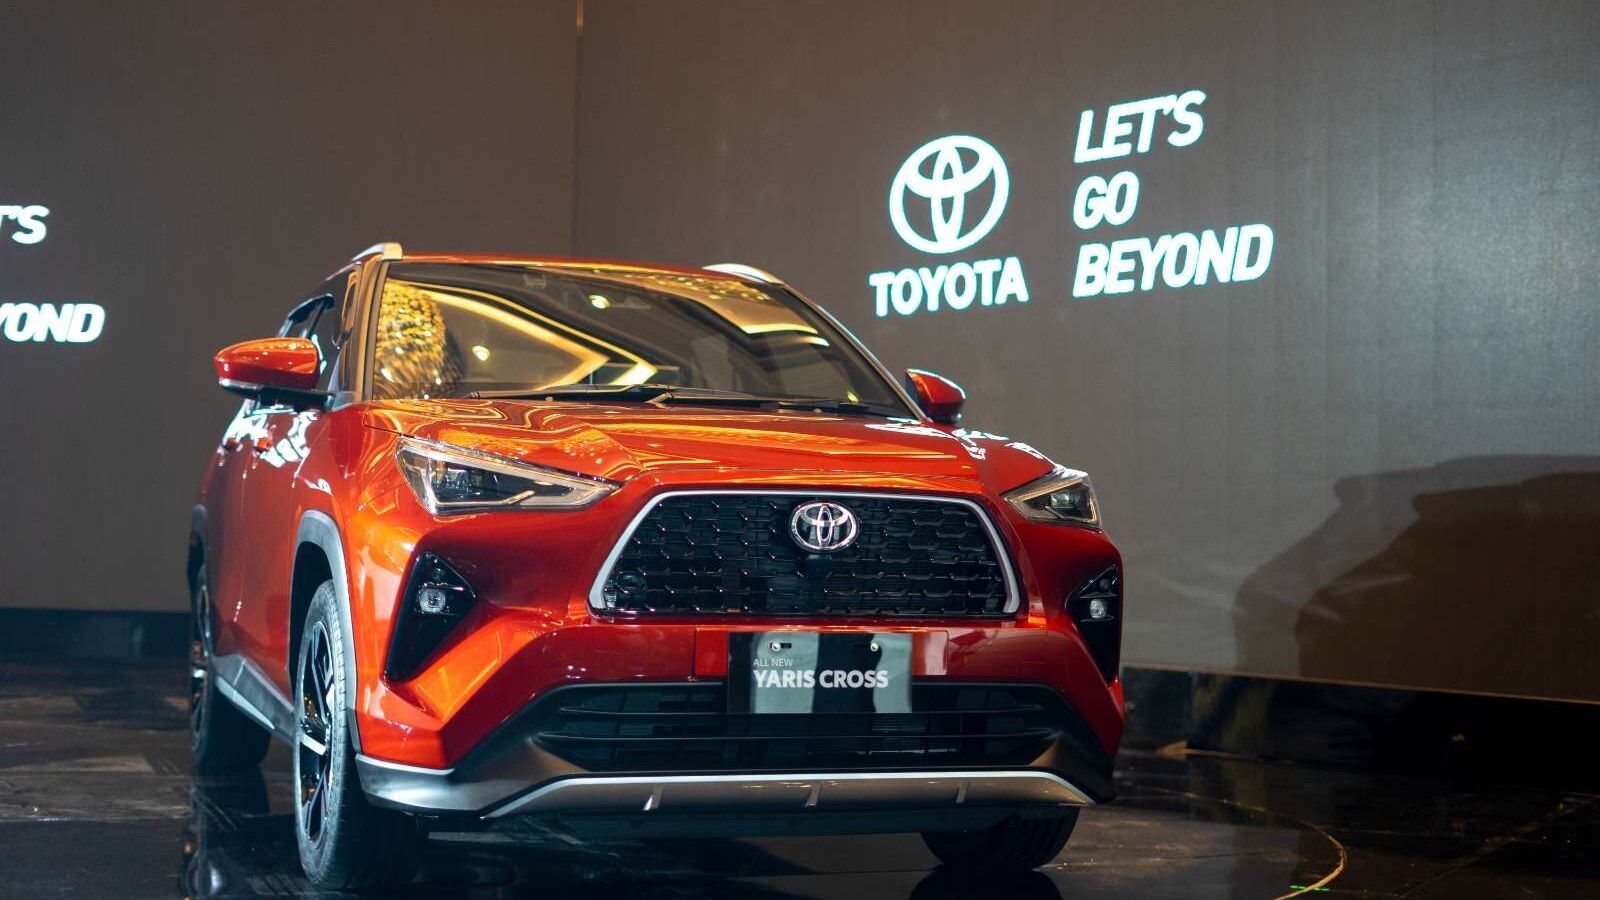 Toyota Yaris Cross SUV breaks cover, aims to challenge Hyundai Creta